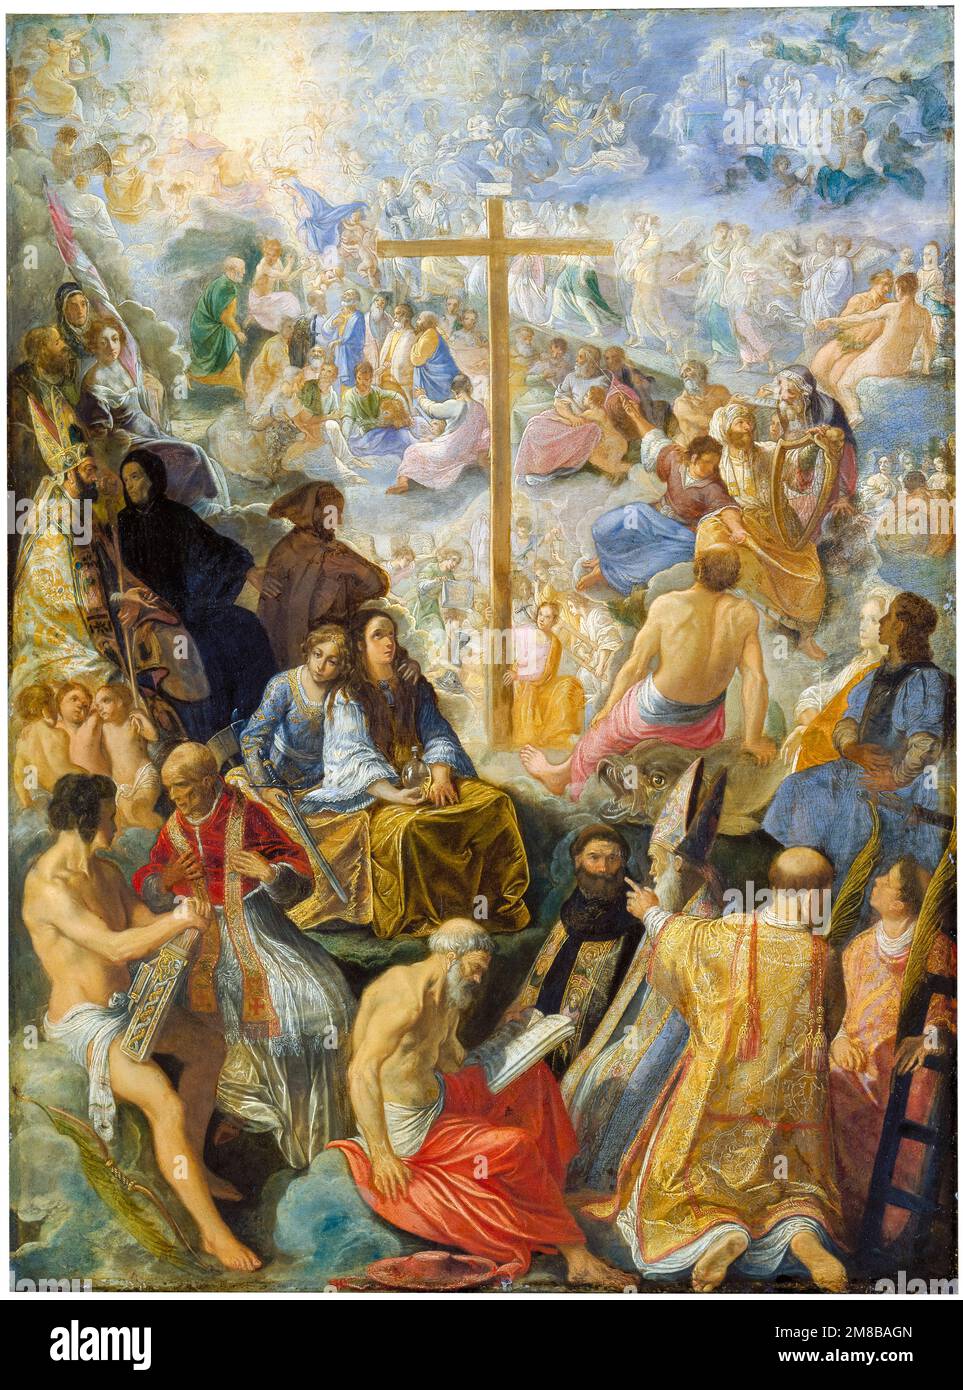 Adam Elsheimer pittura, la pala d'altare dell'esaltazione della vera Croce (pannello centrale), olio su rame, 1603-1605 Foto Stock